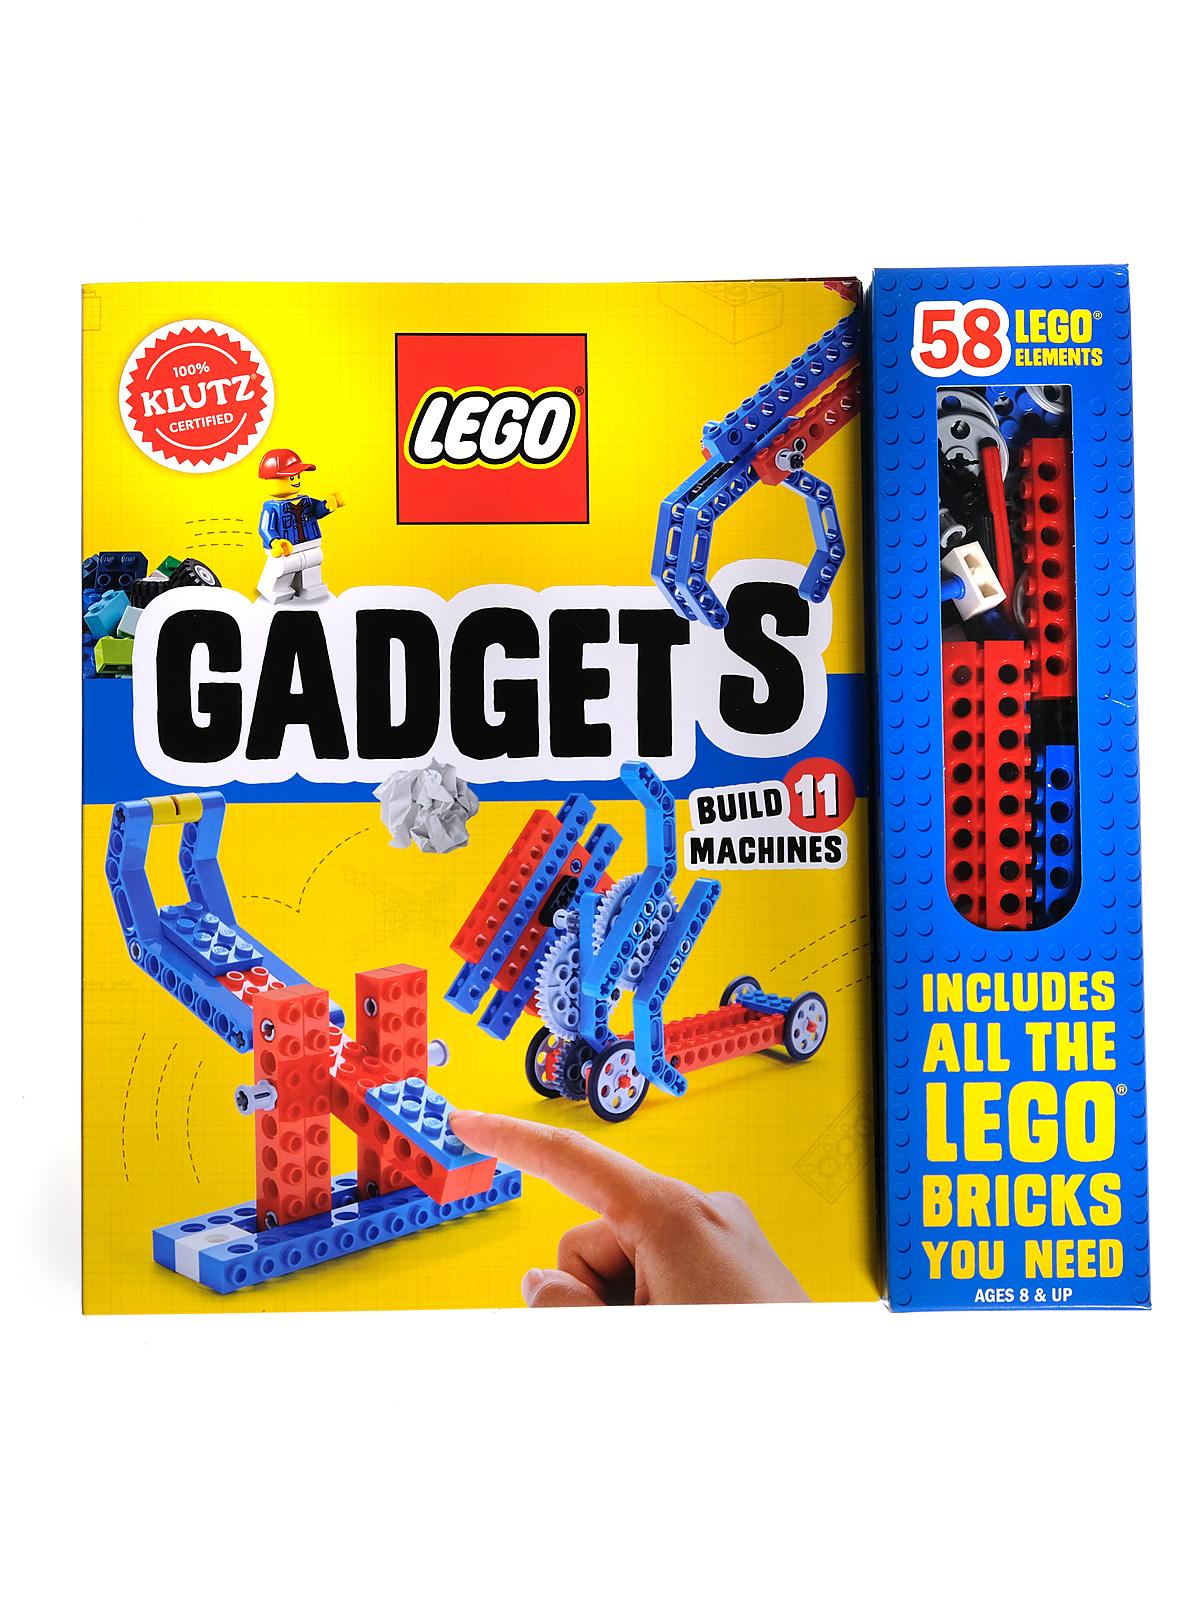 LEGO Gadgets Each